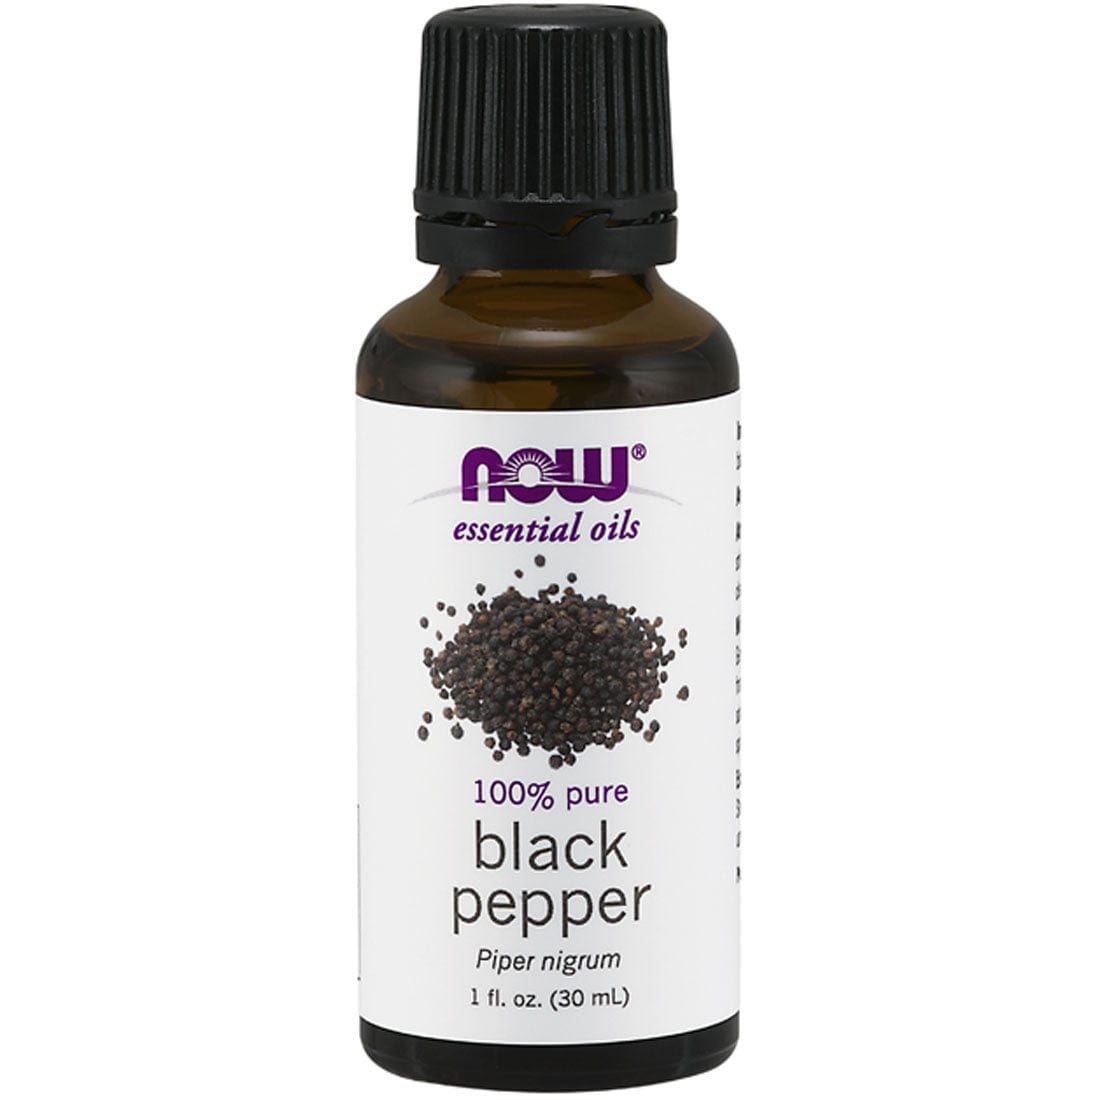 NOW Black Pepper Oil, 30ml